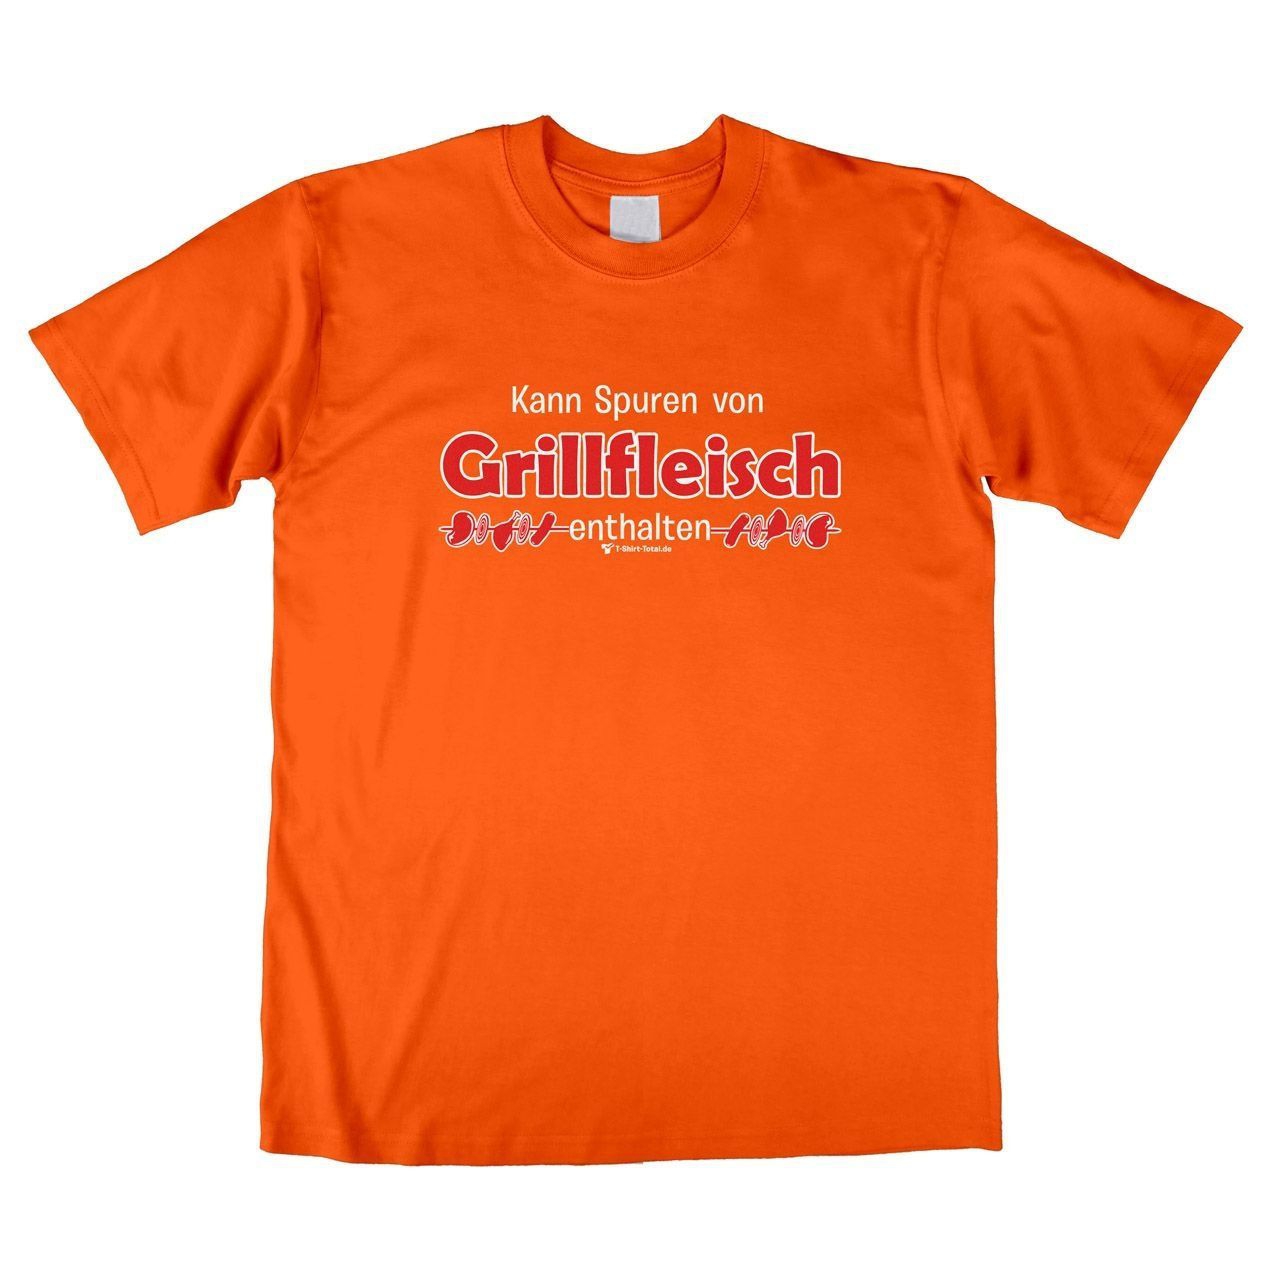 Spuren von Grillfleisch Unisex T-Shirt orange Extra Large